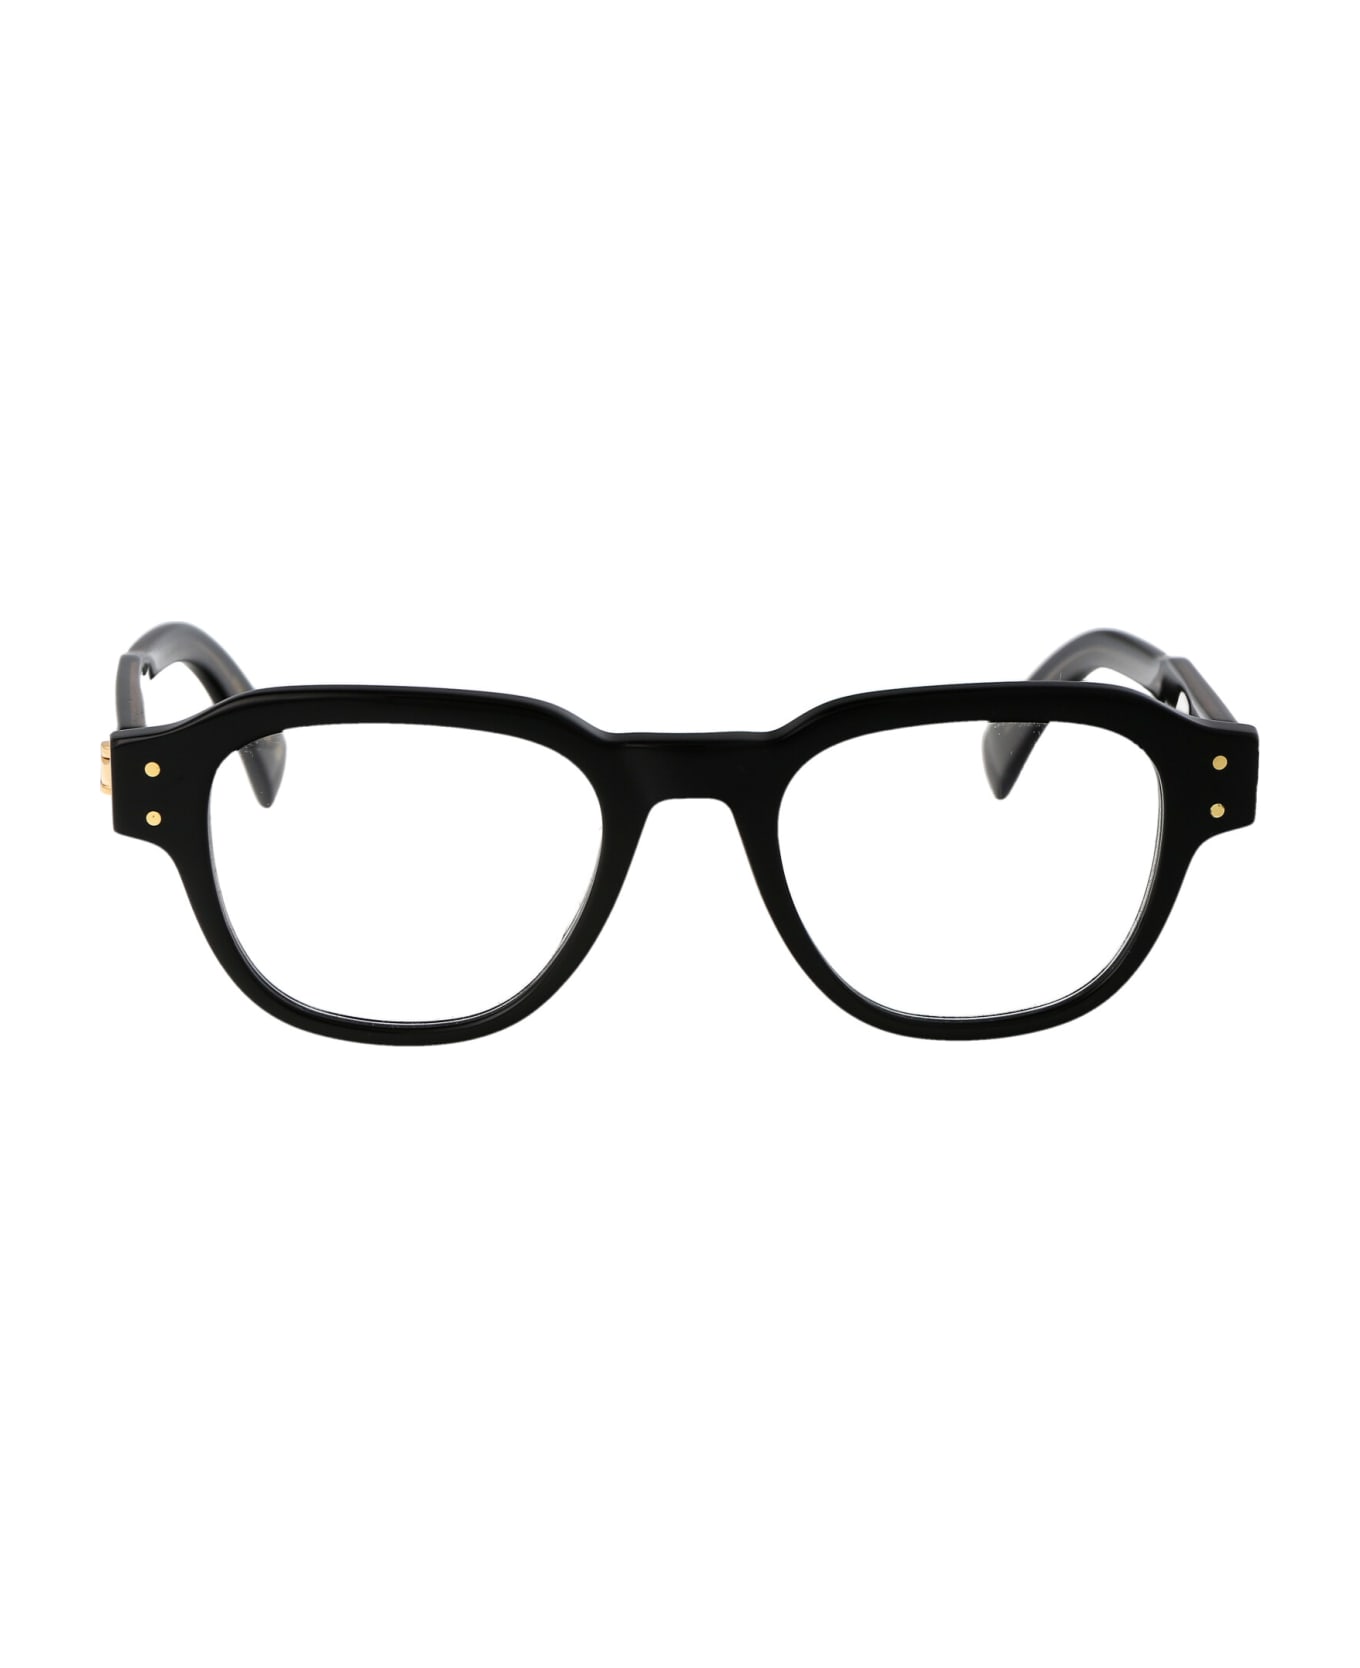 Dunhill Du0048o Glasses - 001 BLACK BLACK TRANSPARENT アイウェア